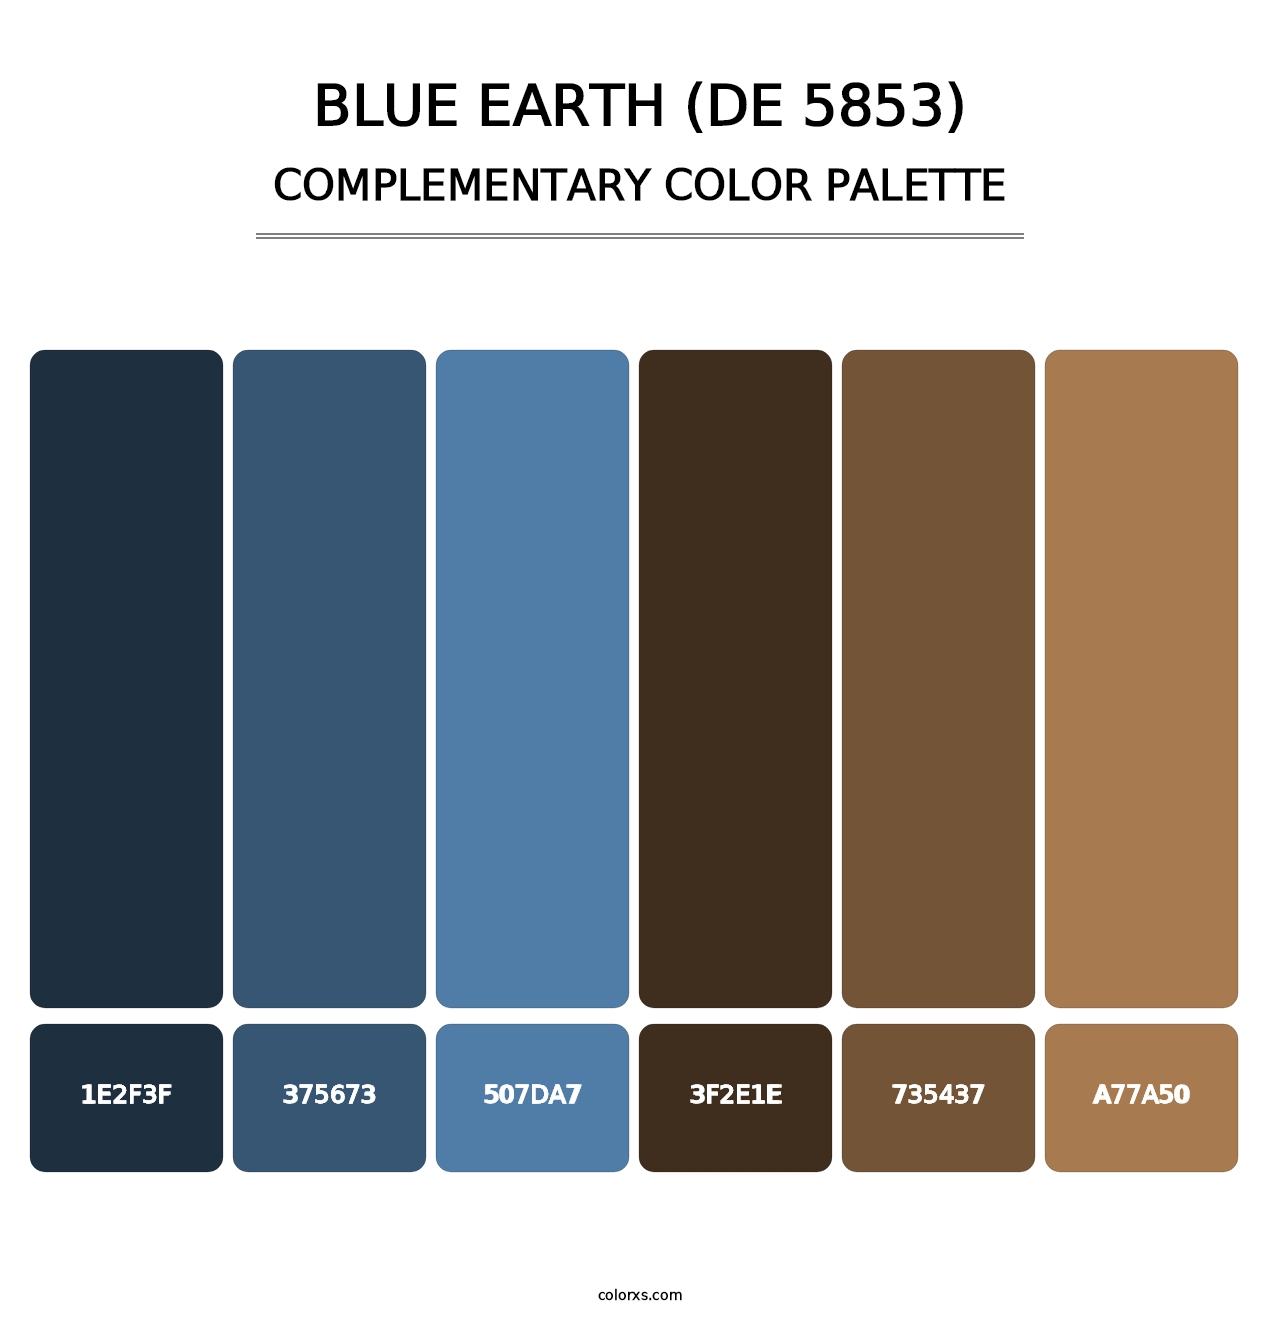 Blue Earth (DE 5853) - Complementary Color Palette